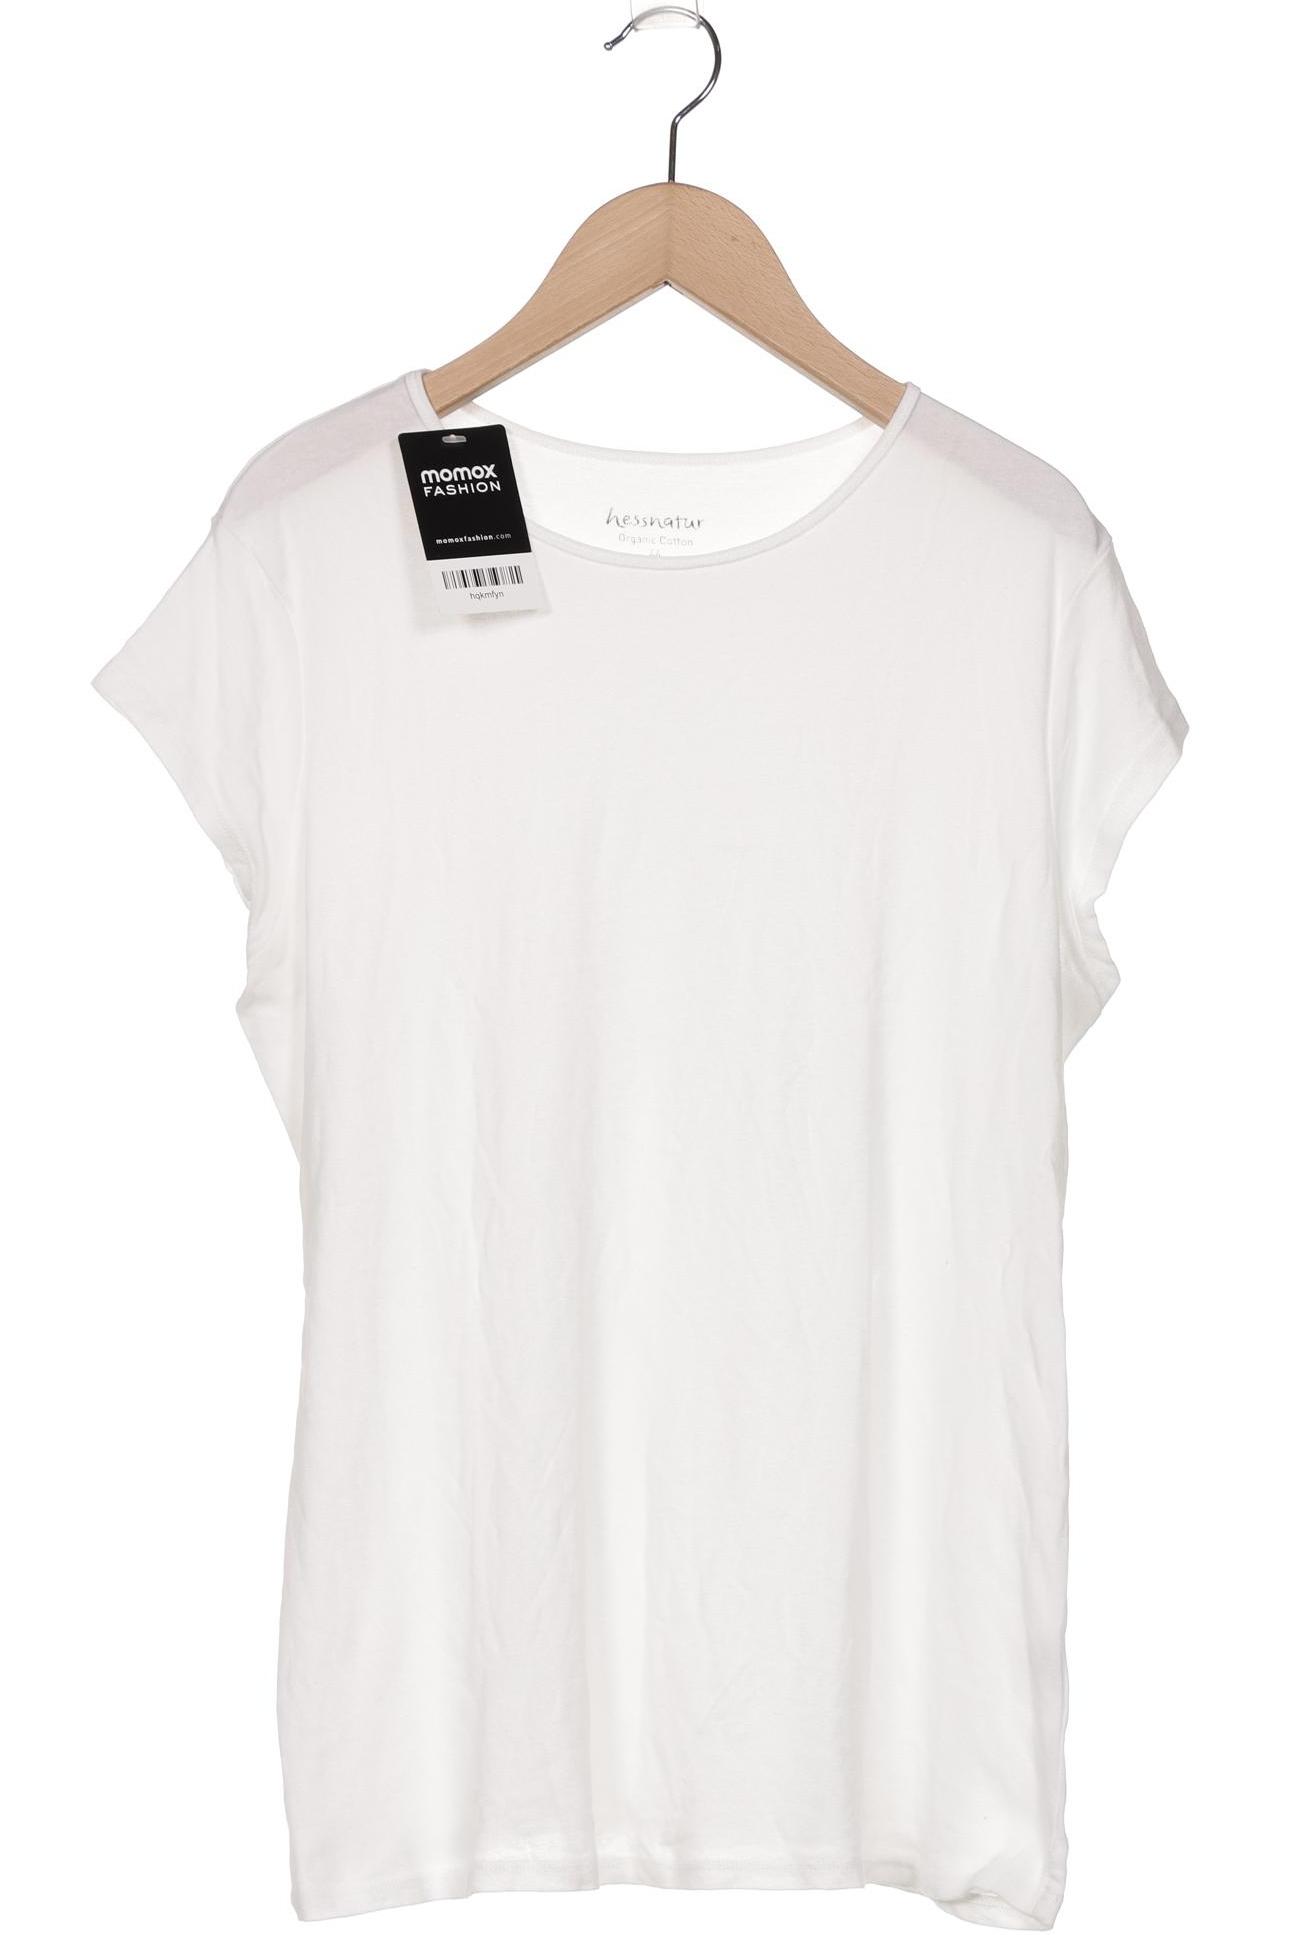 hessnatur Damen T-Shirt, weiß, Gr. 44 von hessnatur